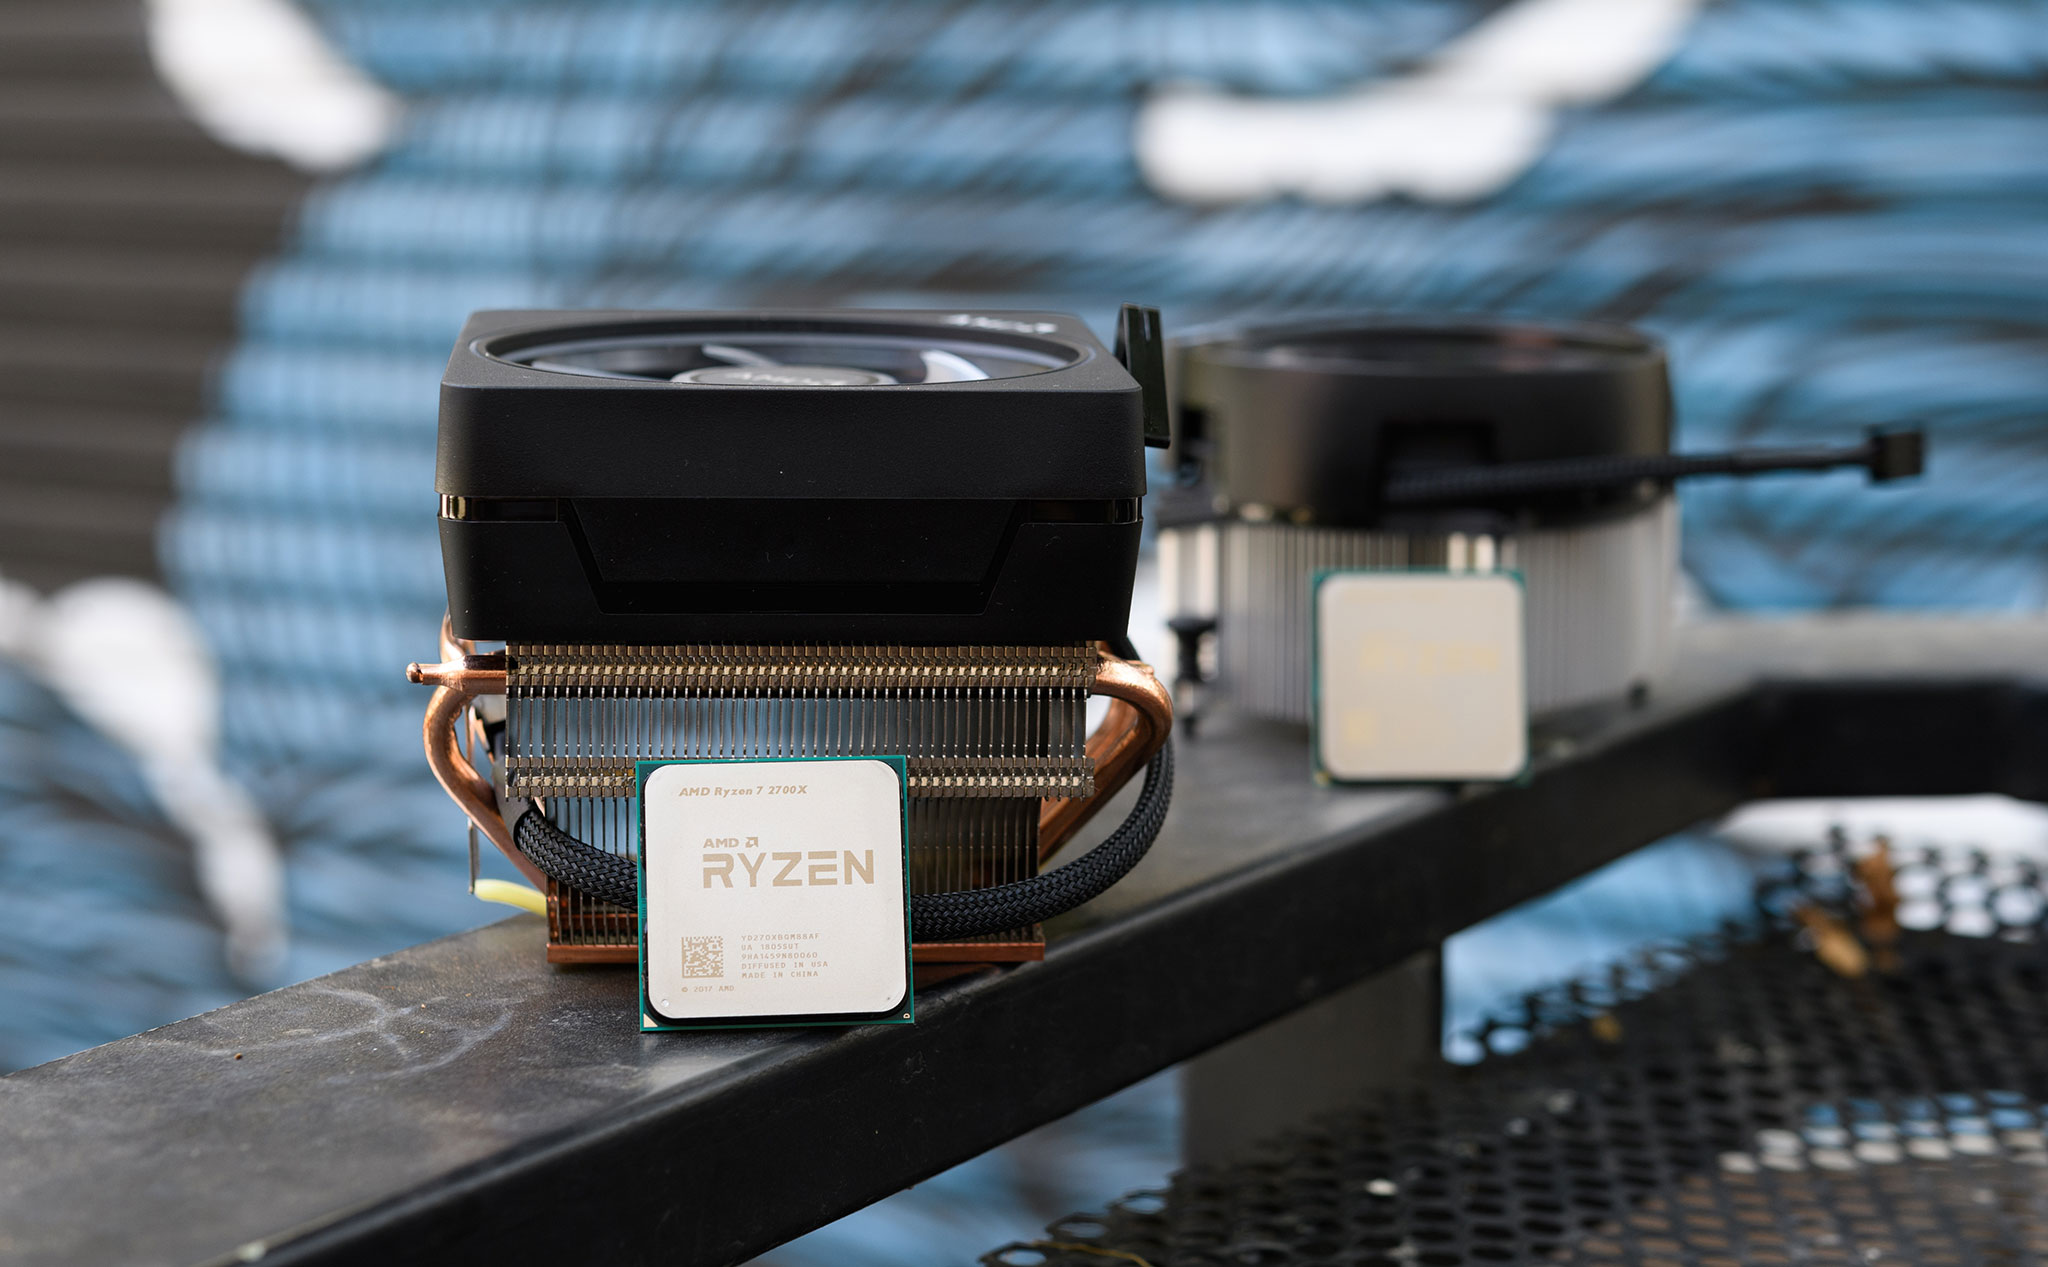 AMD ra mắt Ryzen 5 2600X và Ryzen 7 2700X – Kiến trúc Zen+, công nghệ 12nm, vẫn dùng socket AM4